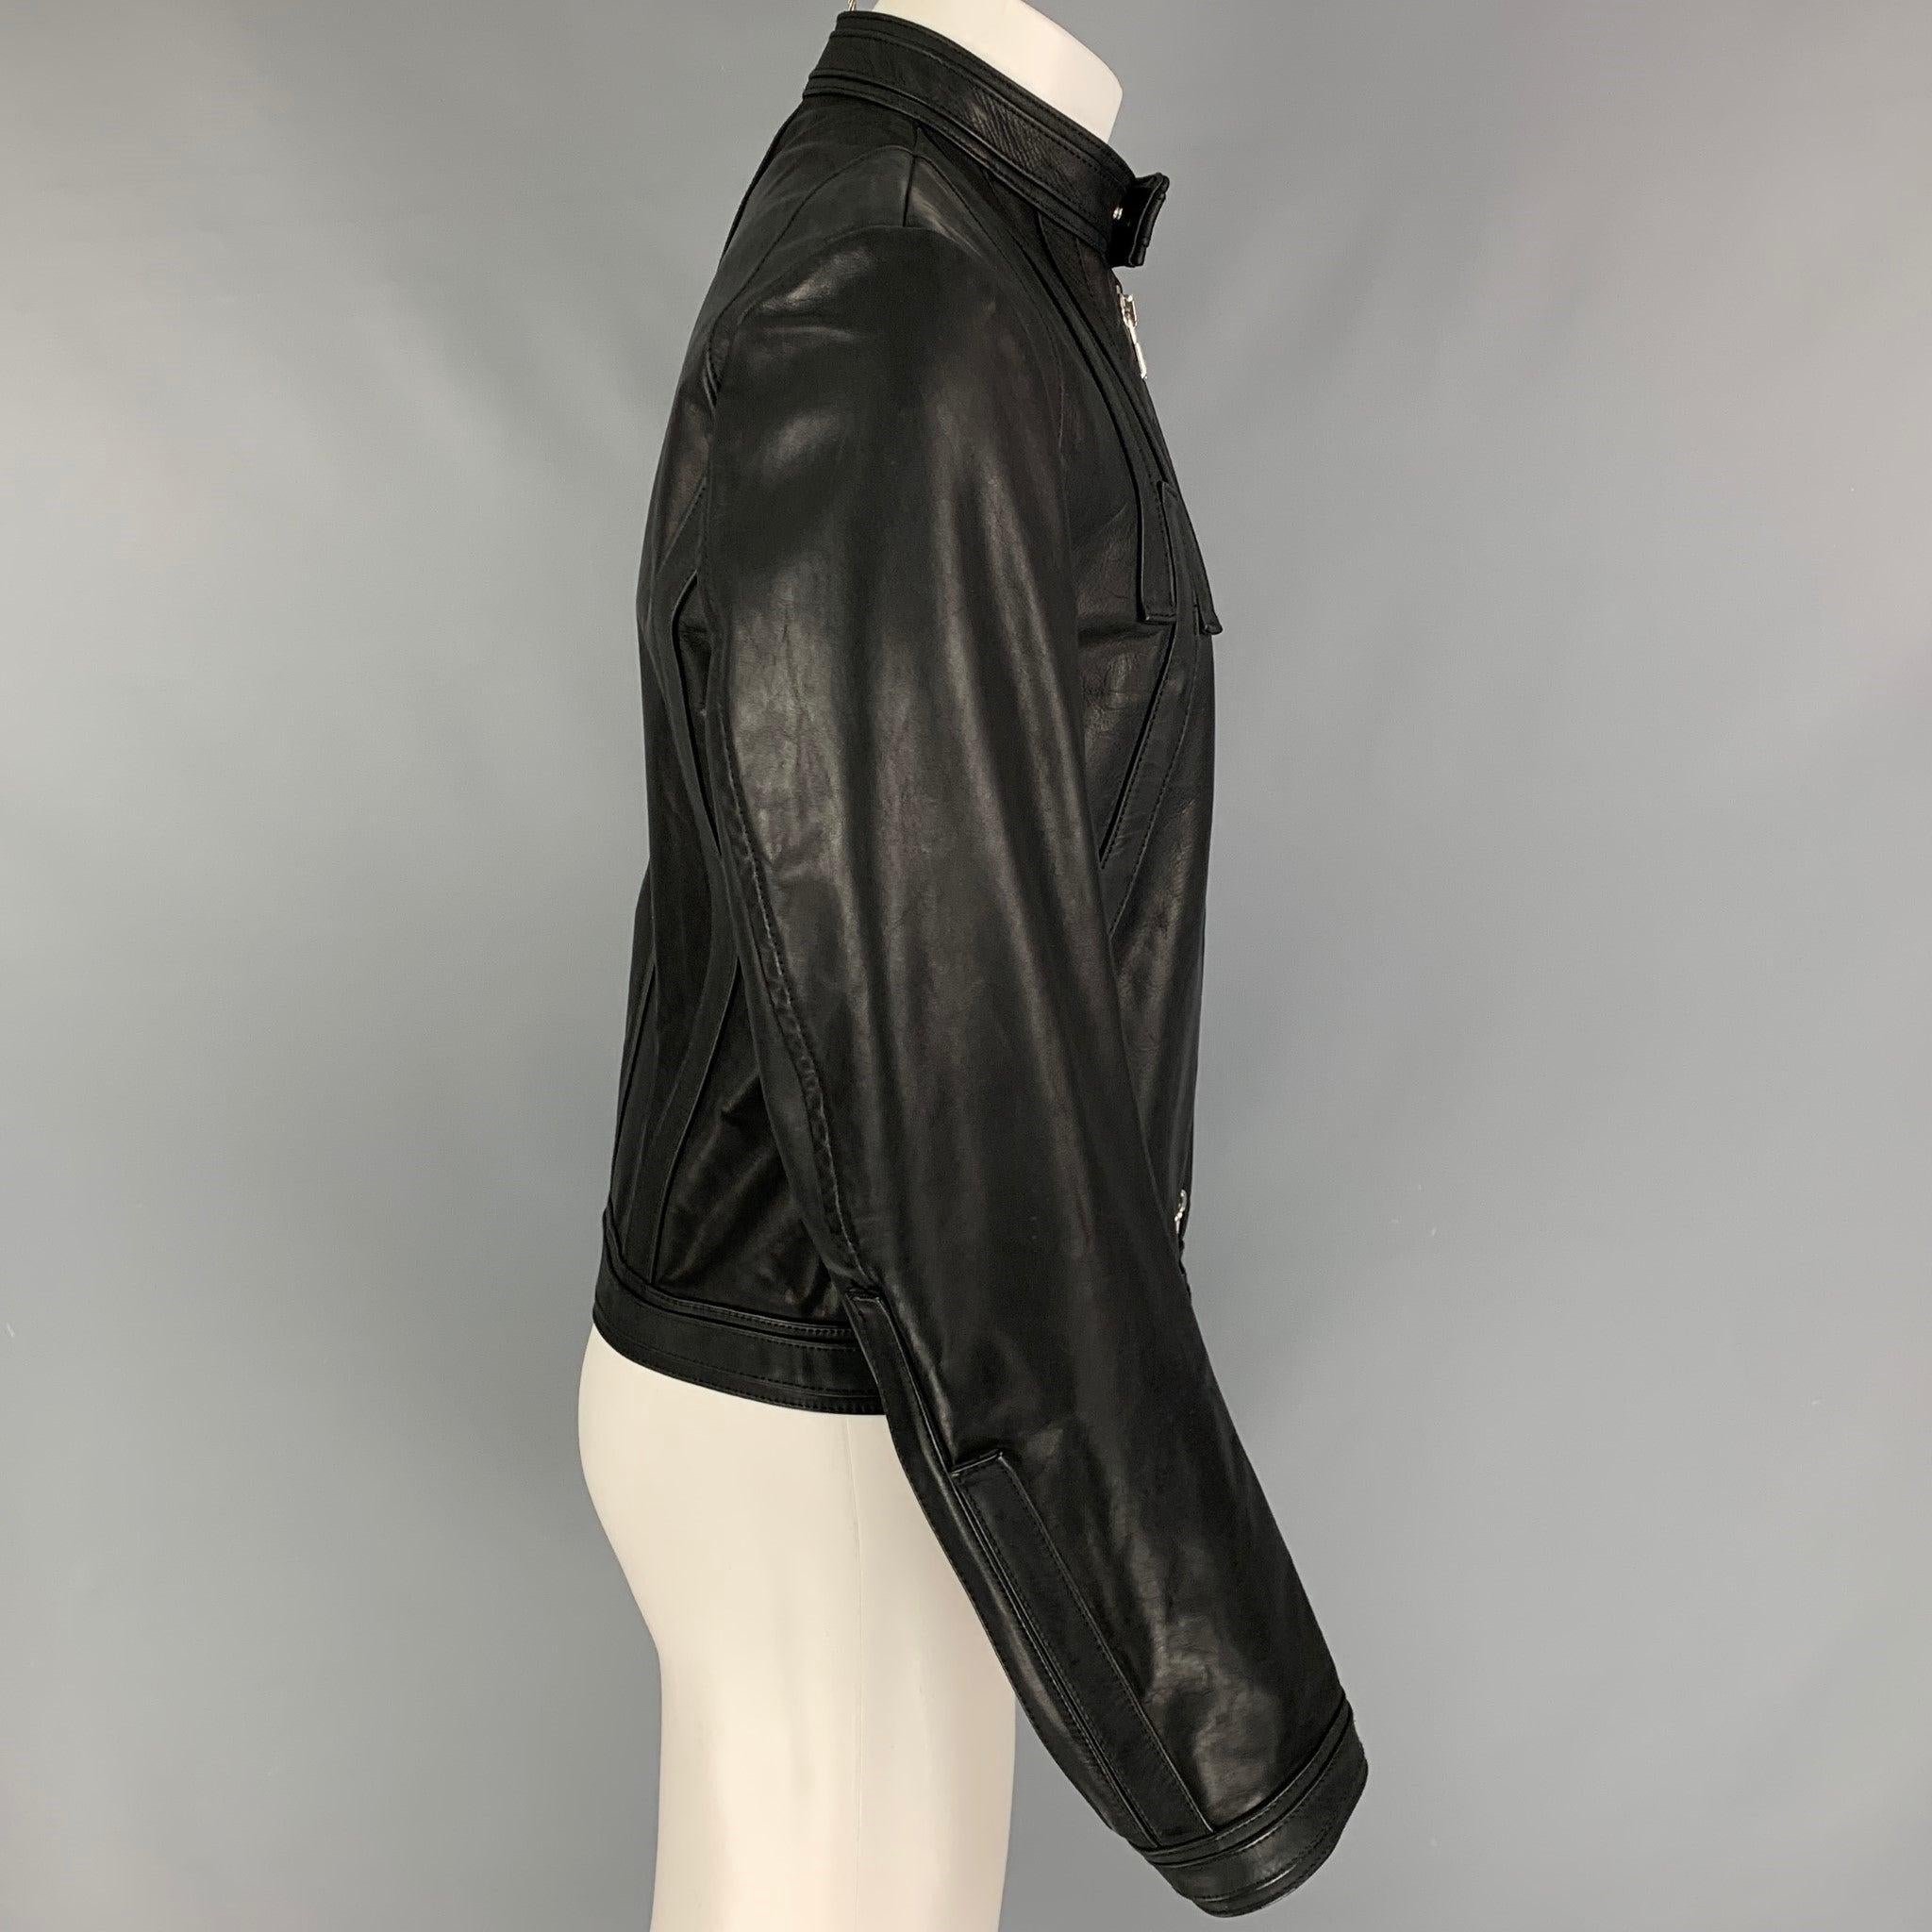 La veste DSQUARED2 est en cuir noir avec doublure intégrale. Elle présente un style moto, des rayures sur le devant, des poches zippées sur le devant, des manches zippées et une fermeture à glissière intégrale. Fabriquées en Italie.
Excellent
Etat